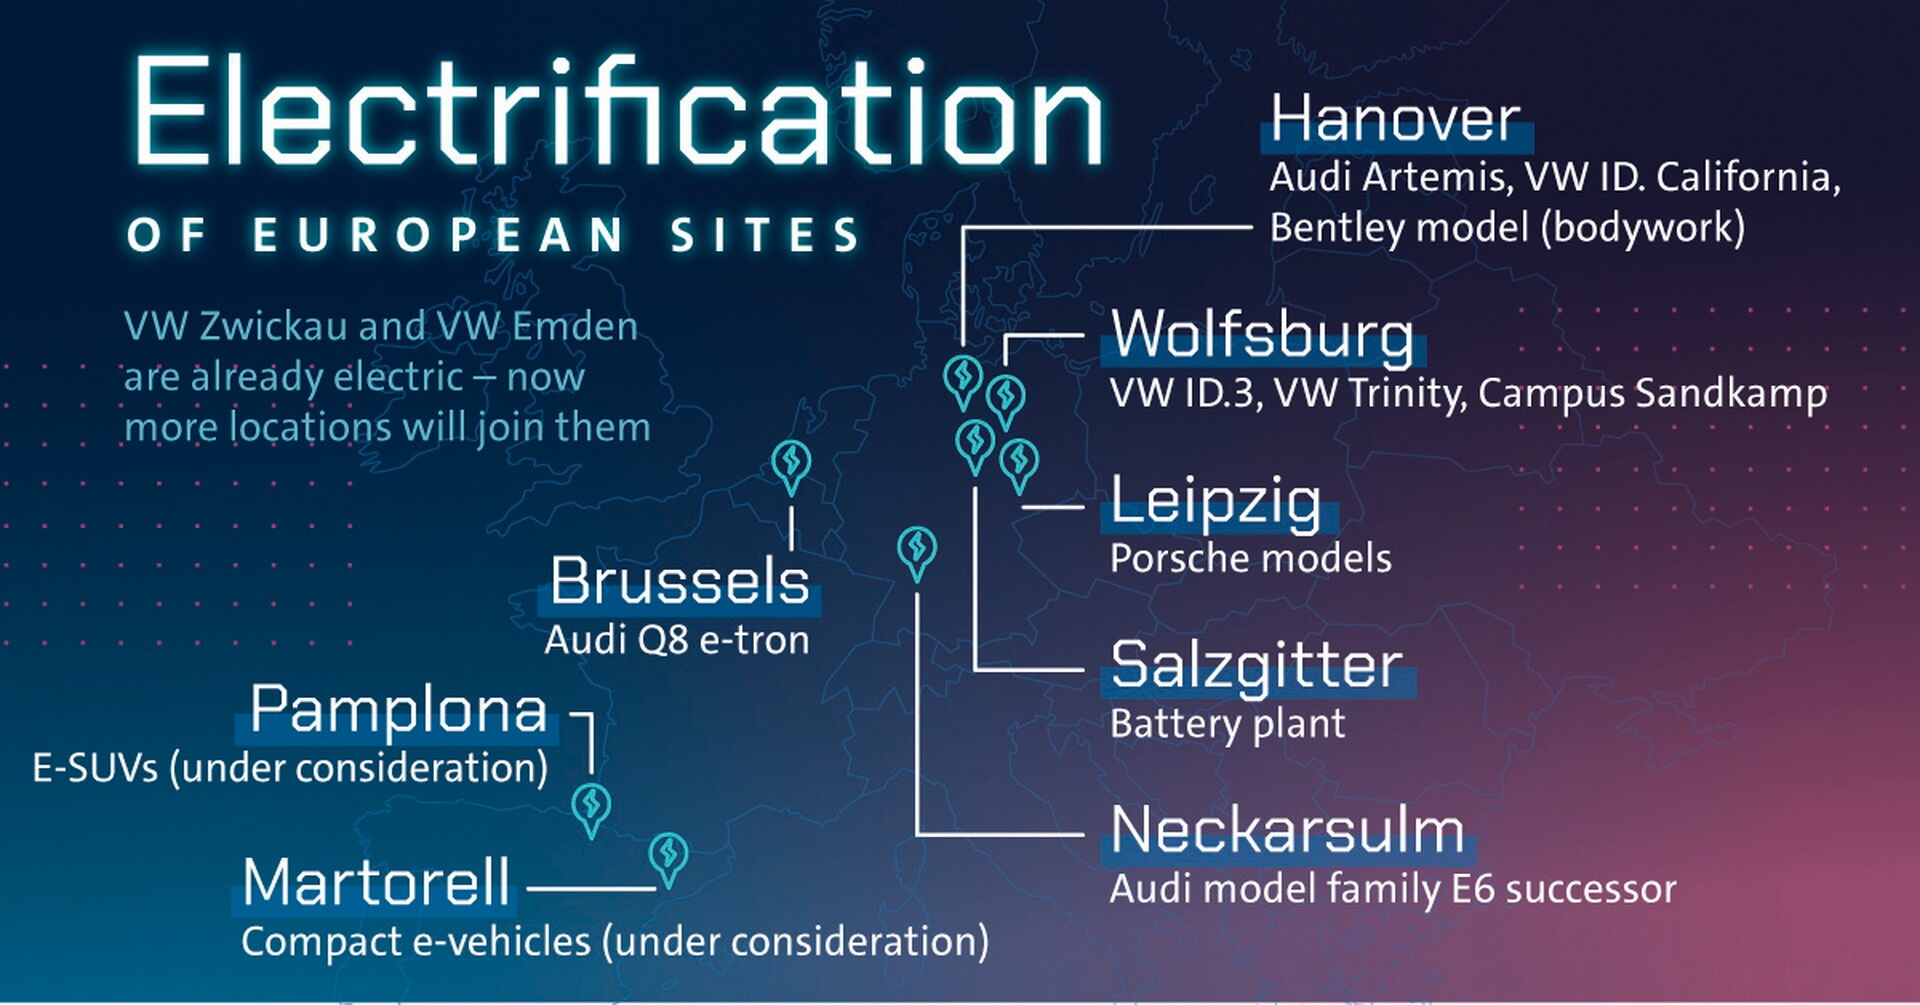 Volkswagen продвигает электрификацию своих заводов в Европе